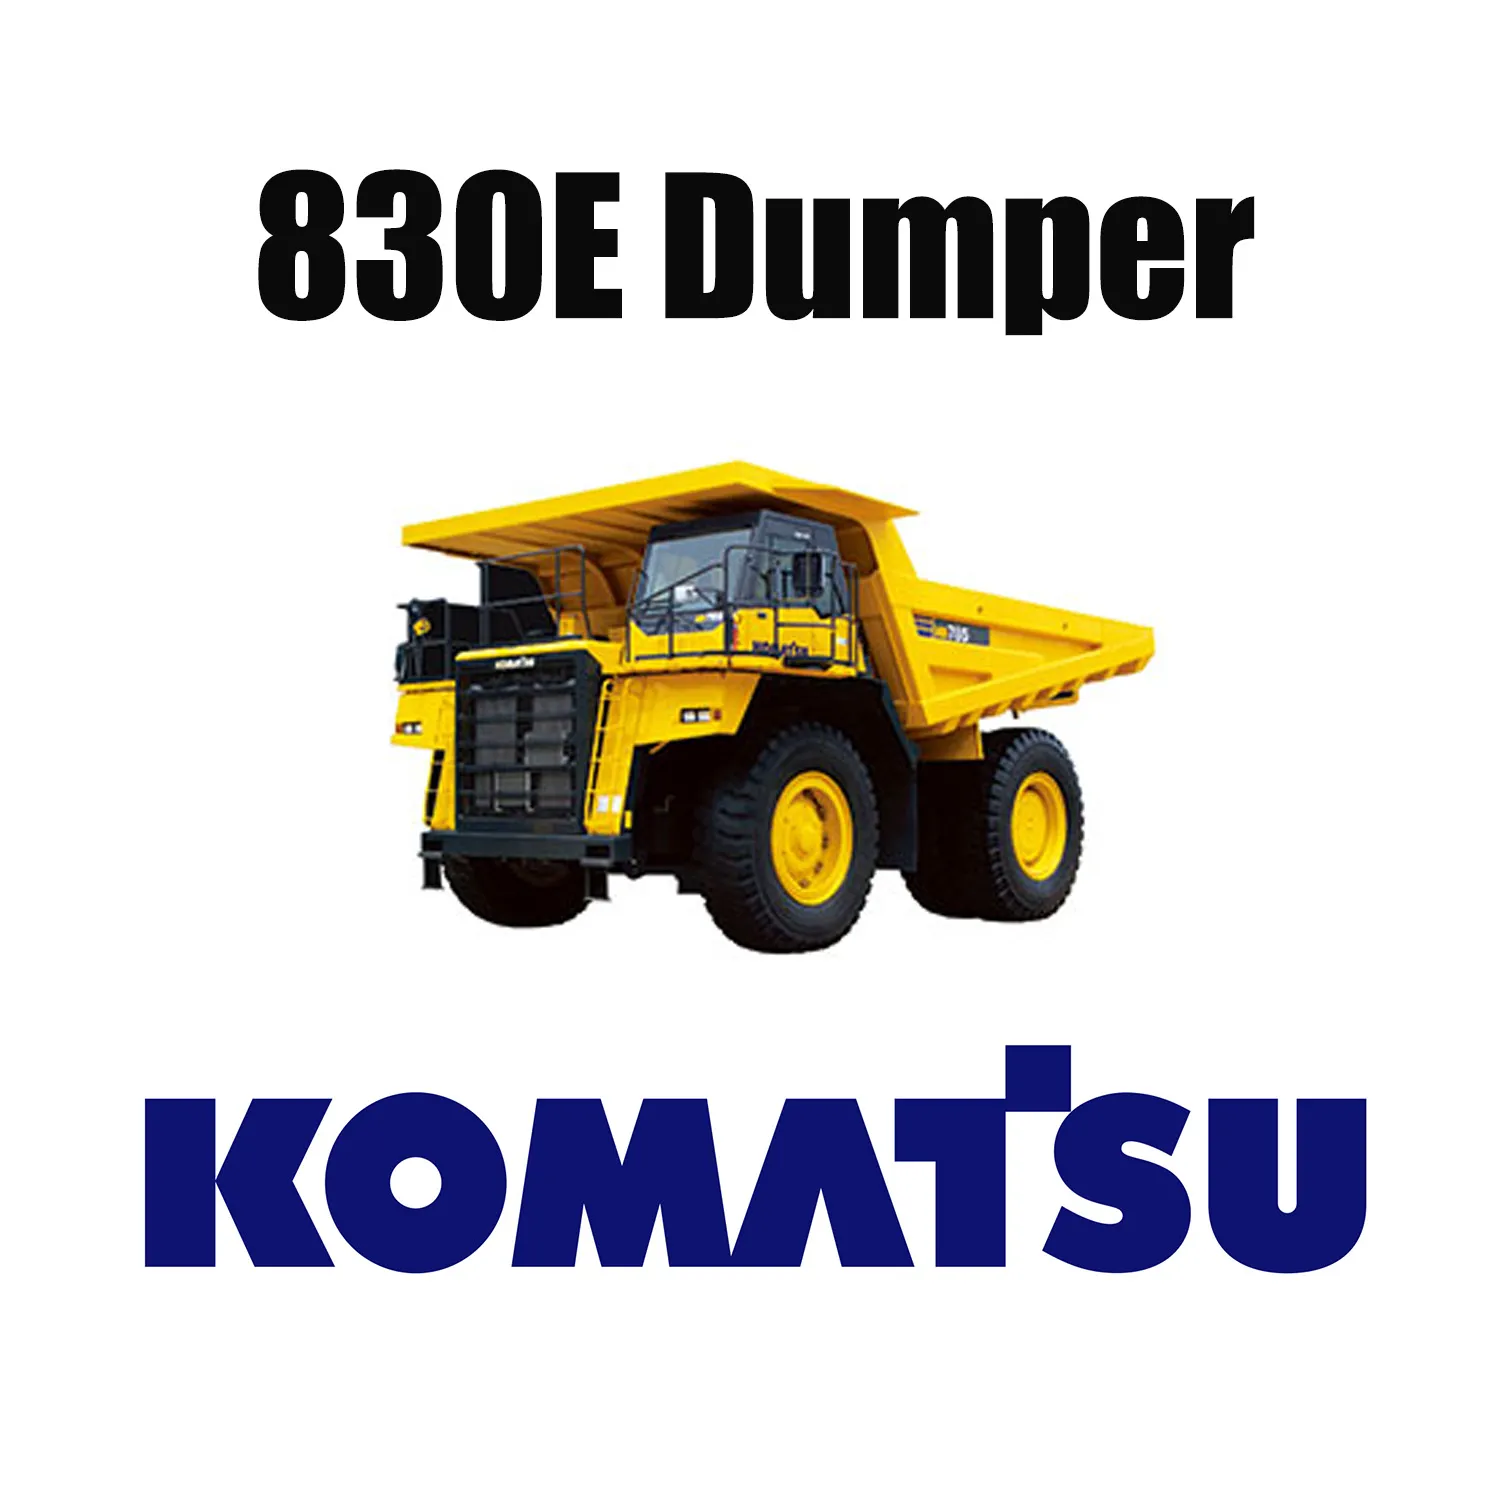 Ανθεκτικά στην κοπή ελαστικά LUAN 46/90R57 Large OTR Earthmover για Komatsu 830E